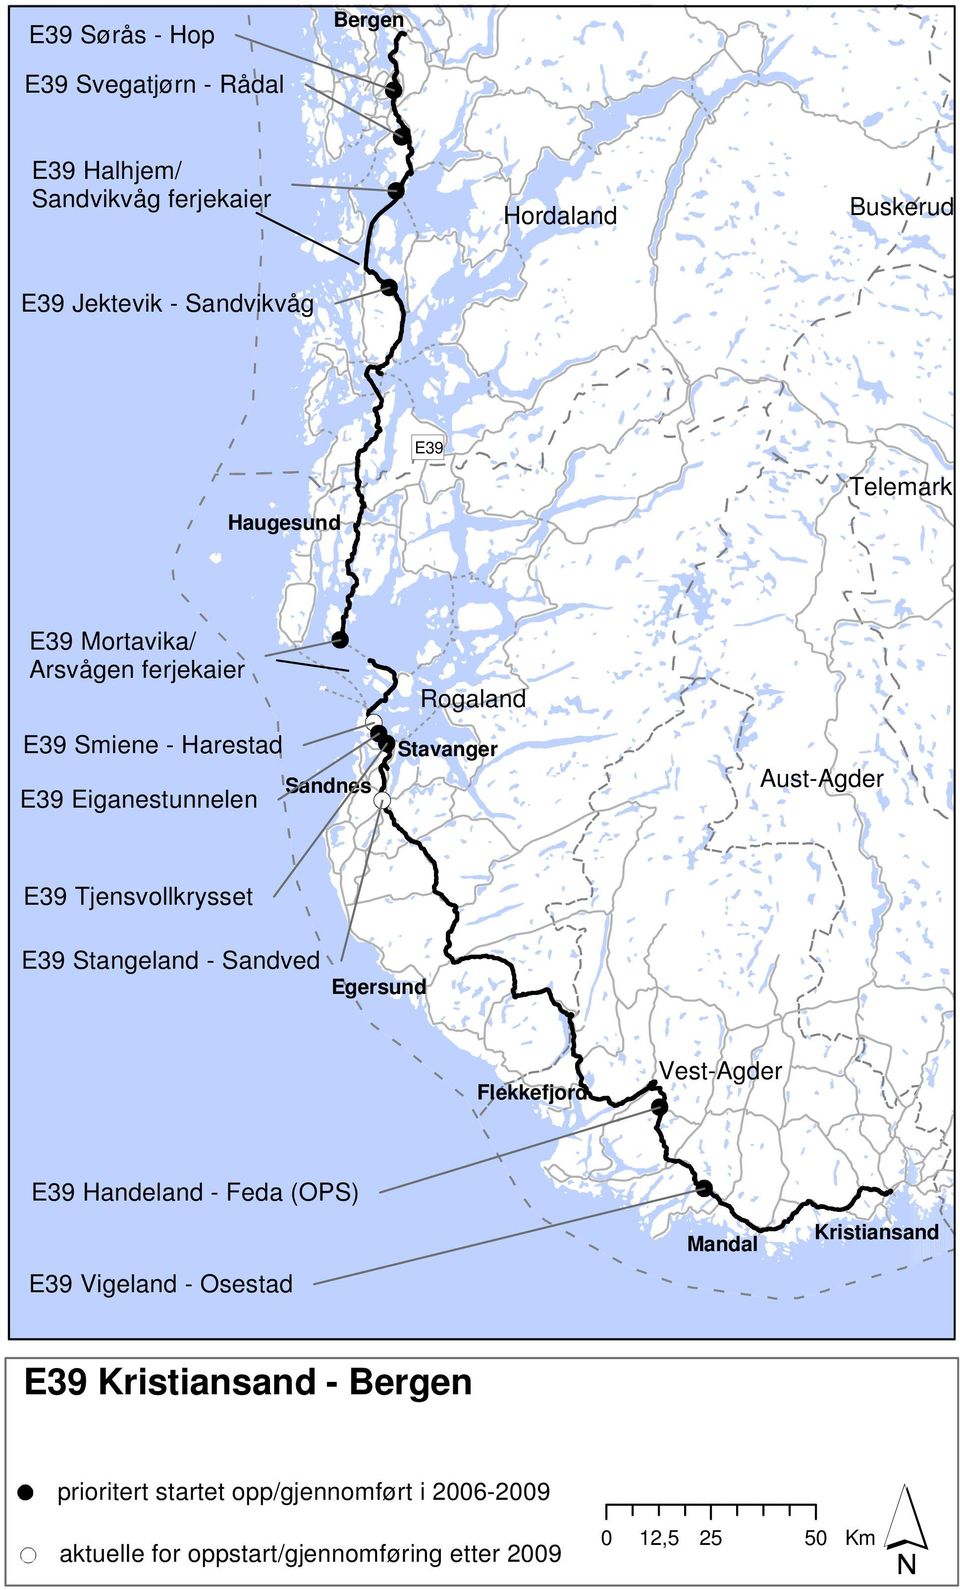 Tjensvollkrysset E39 Stangeland - Sandved Egersund Flekkefjord Vest-Agder E39 Handeland - Feda (OPS) E39 Vigeland - Osestad Mandal